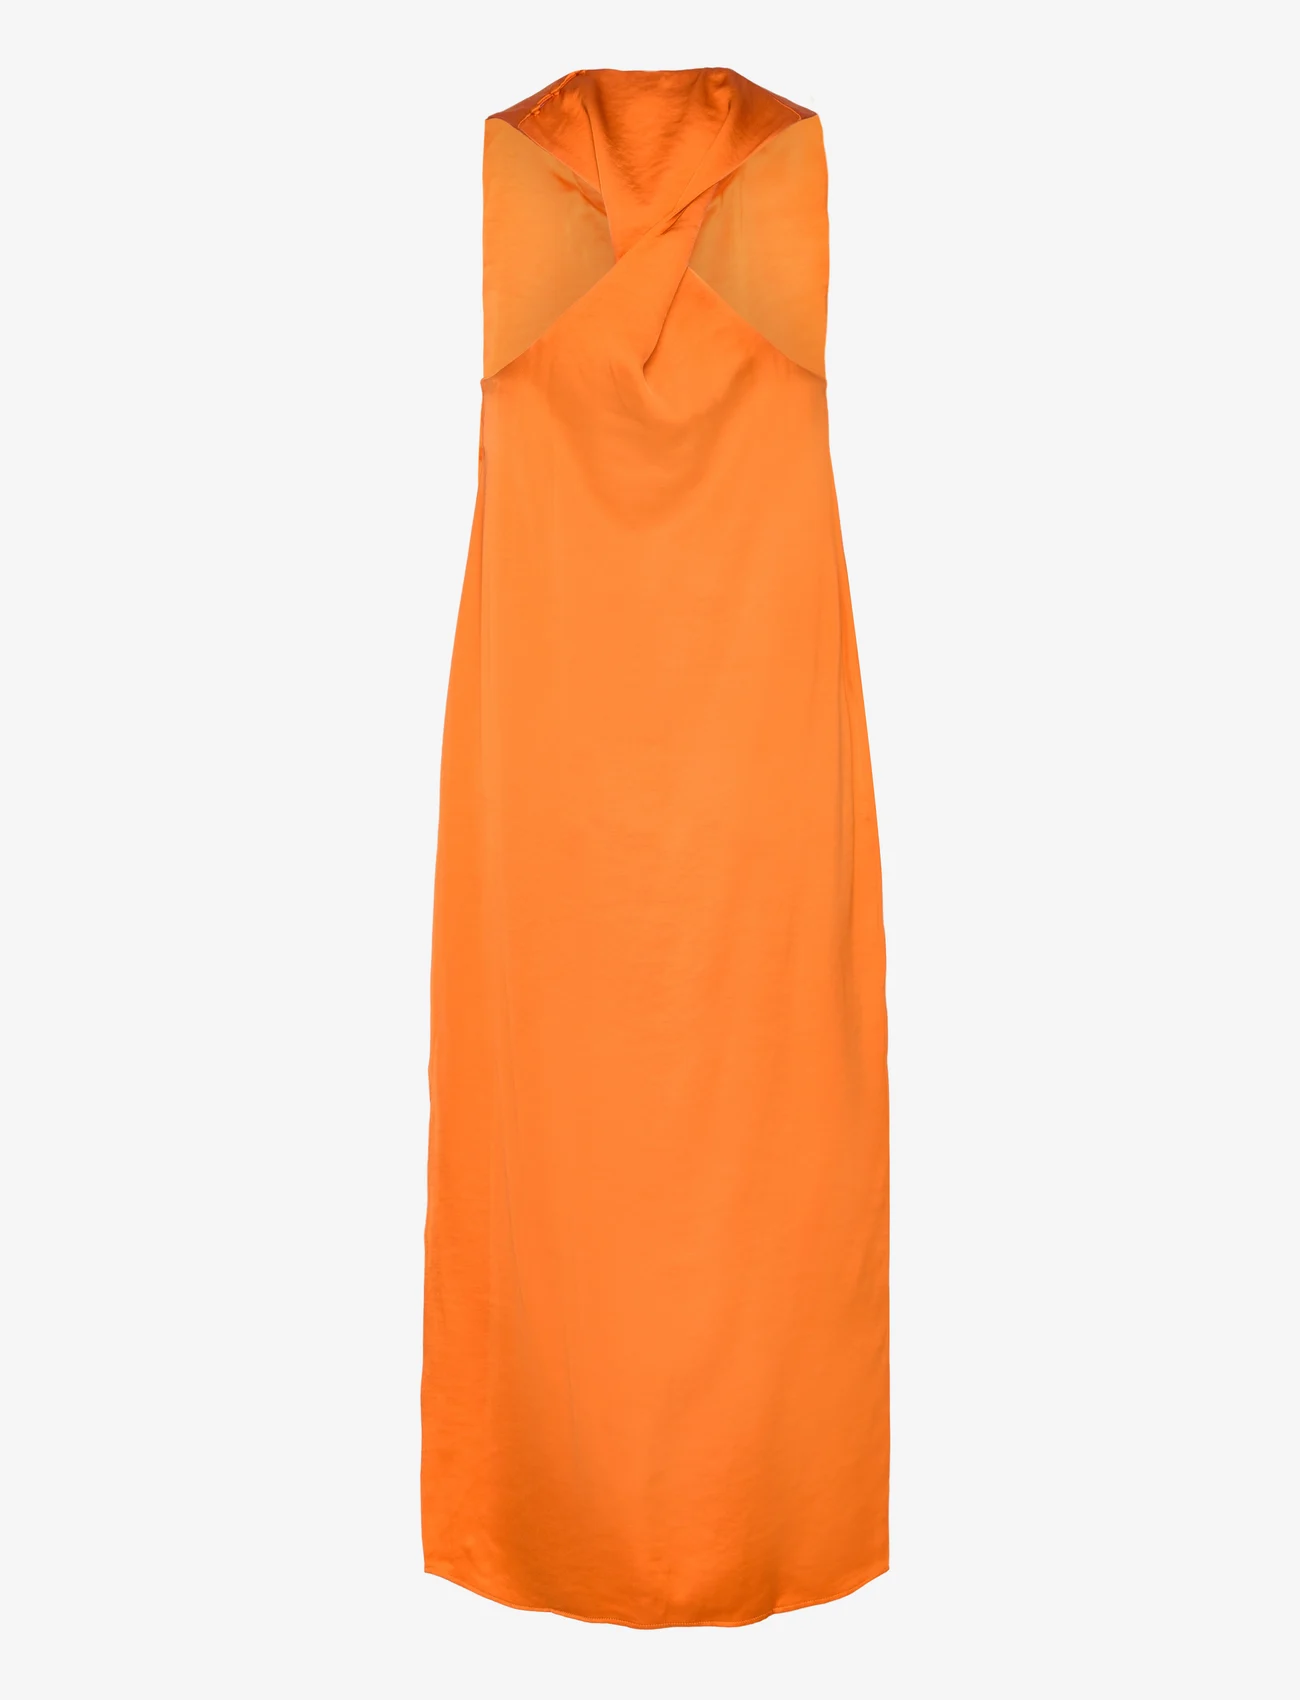 Samsøe Samsøe - Ellie dress 14773 - party wear at outlet prices - russet orange - 1